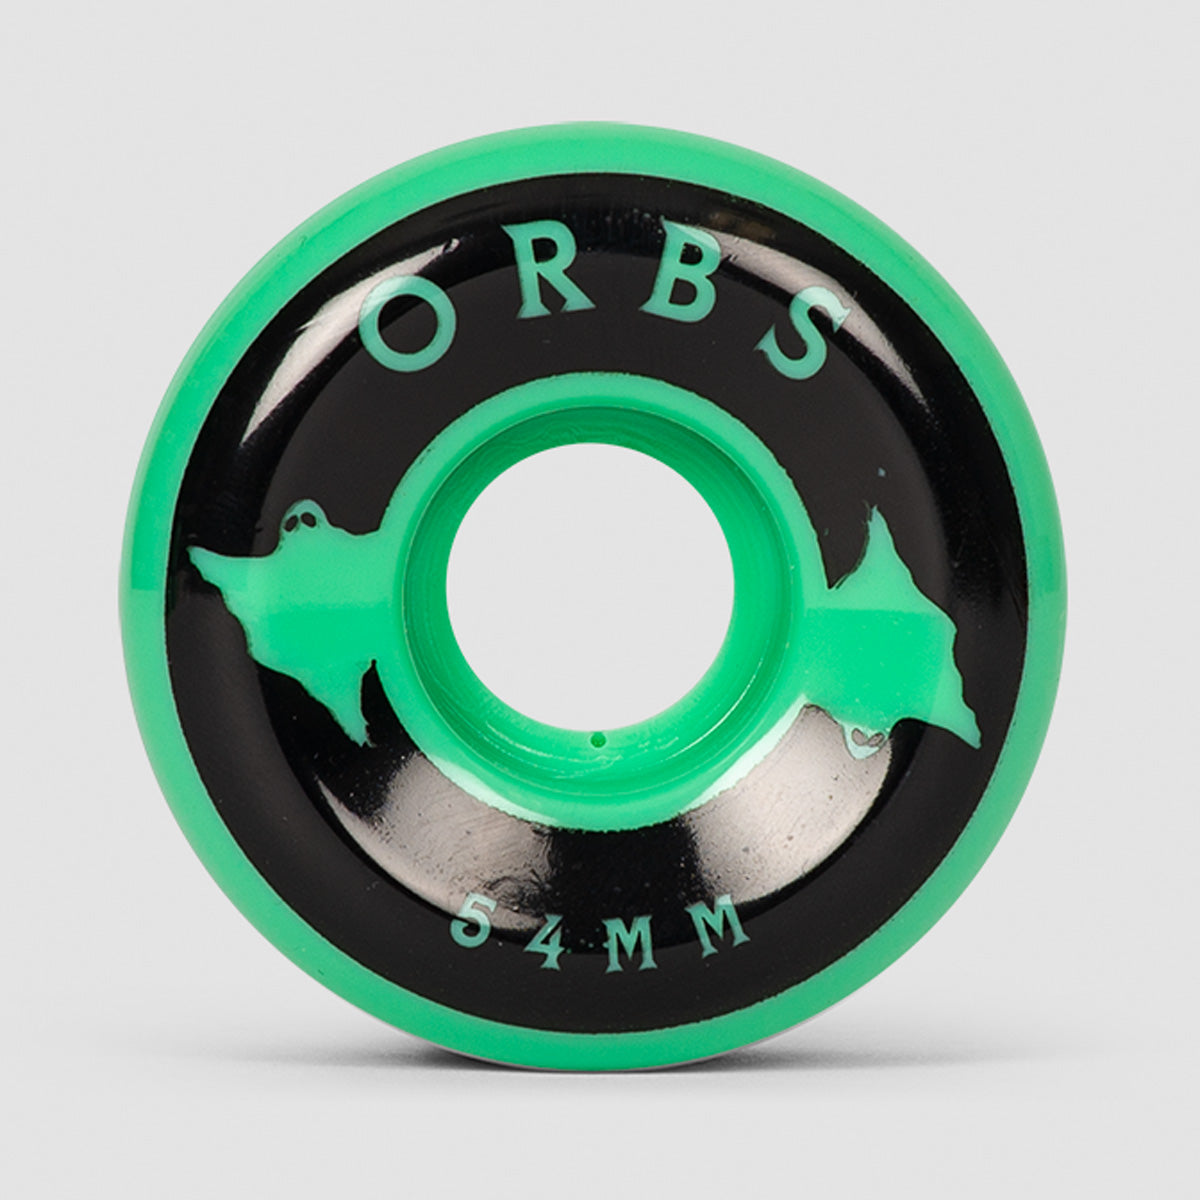 Welcome Orbs Specters Solids 99A Skateboard Wheels Mint/Black 54mm